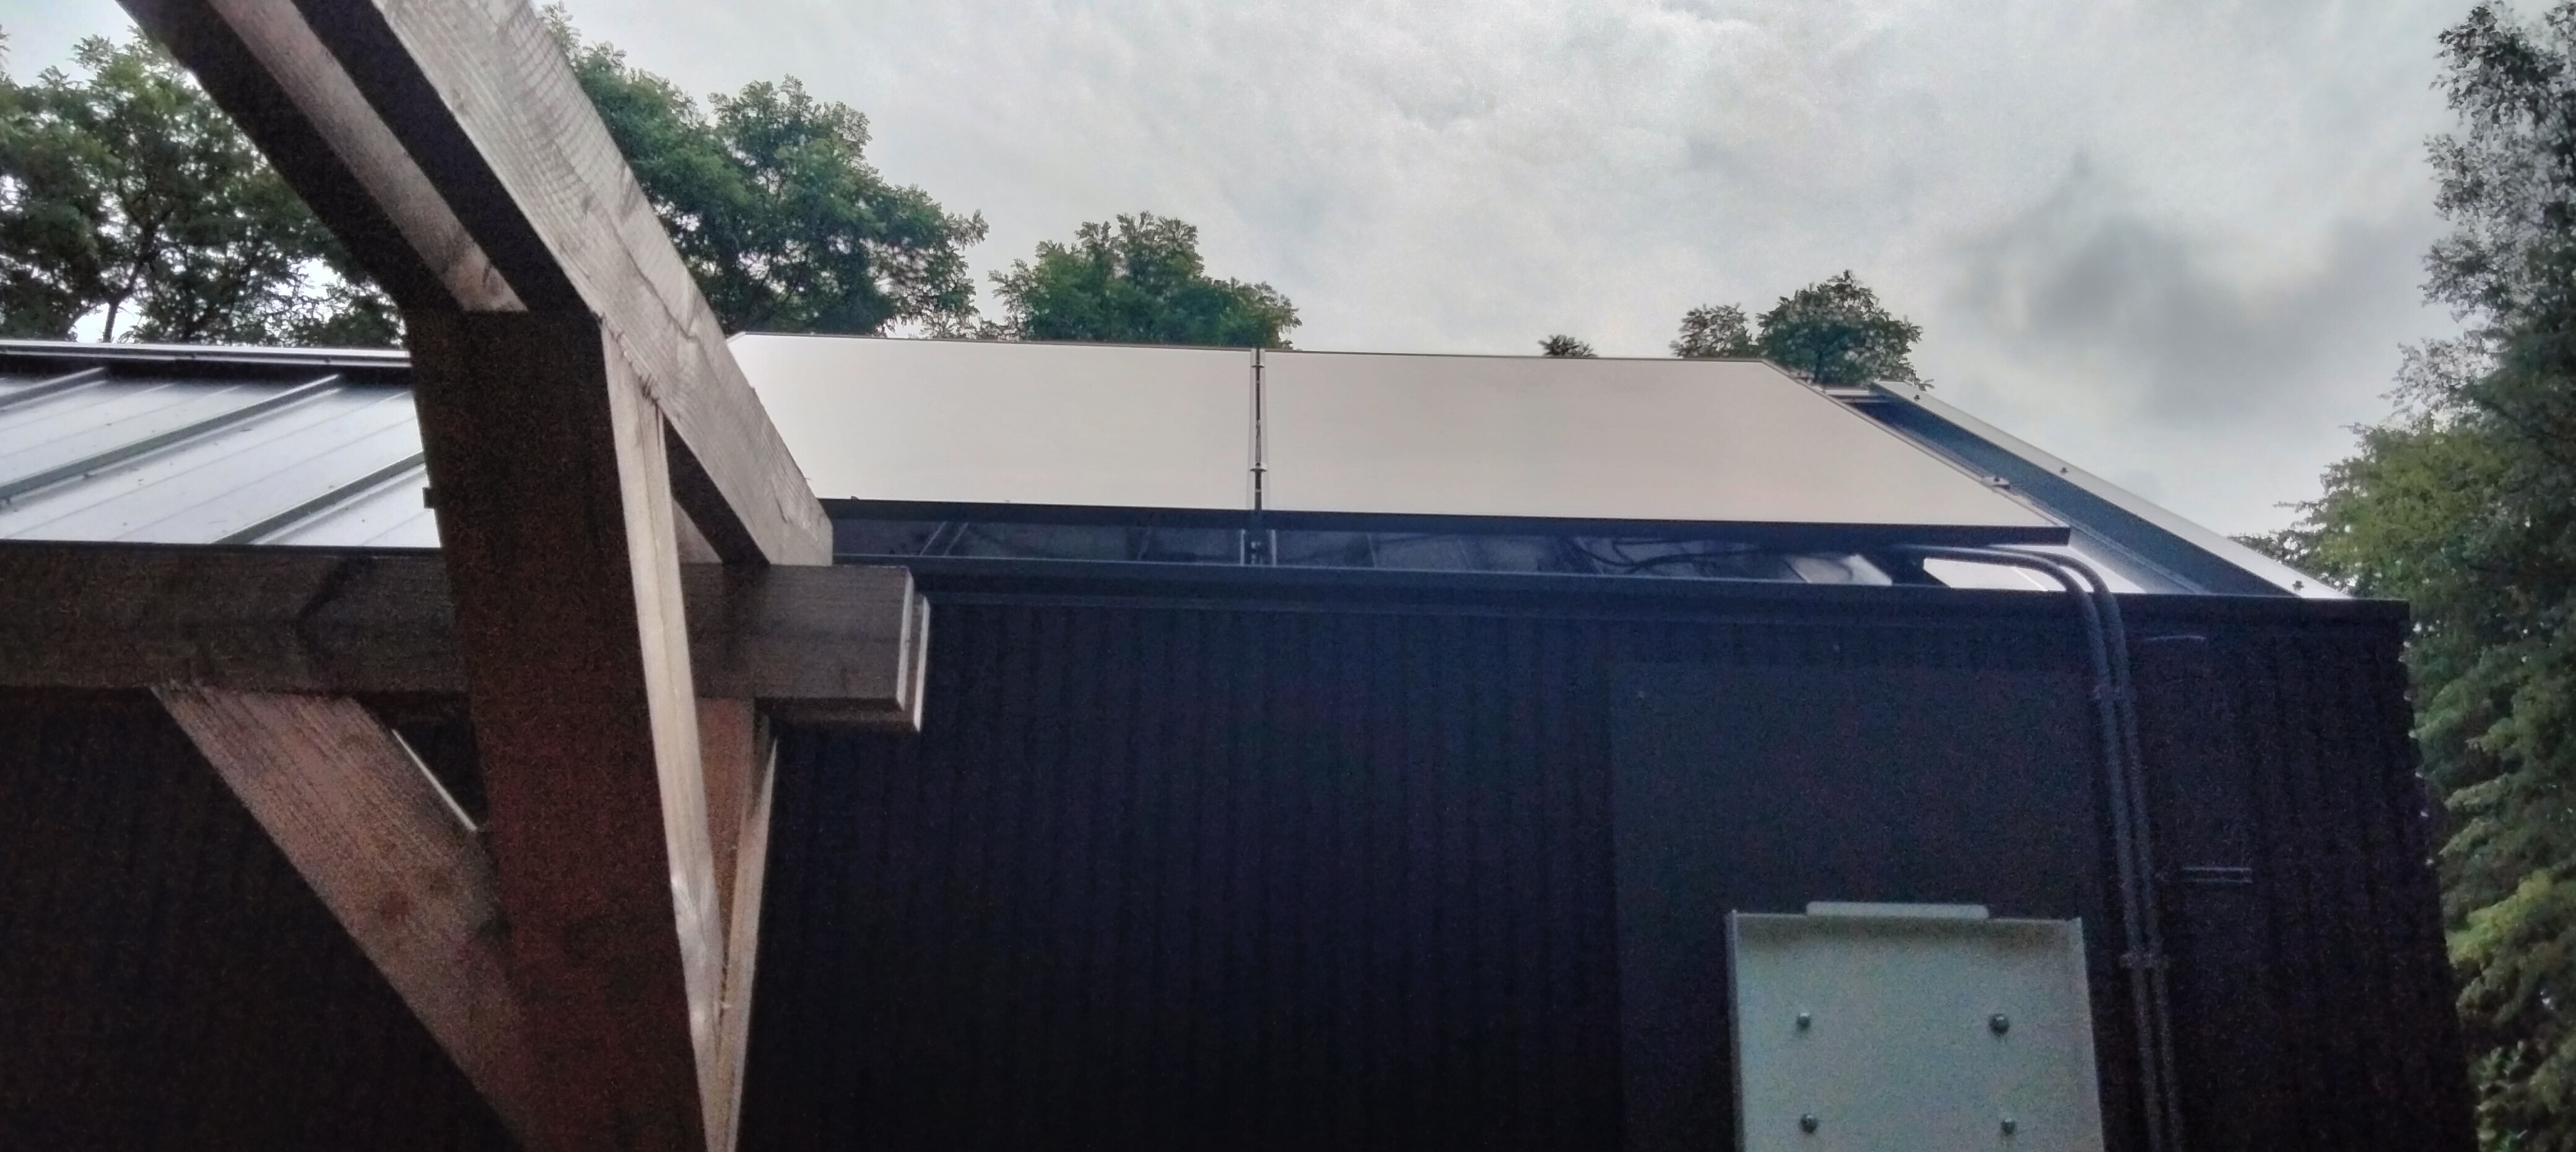 Solar projectincl thuisbatterij (Bilthoven)